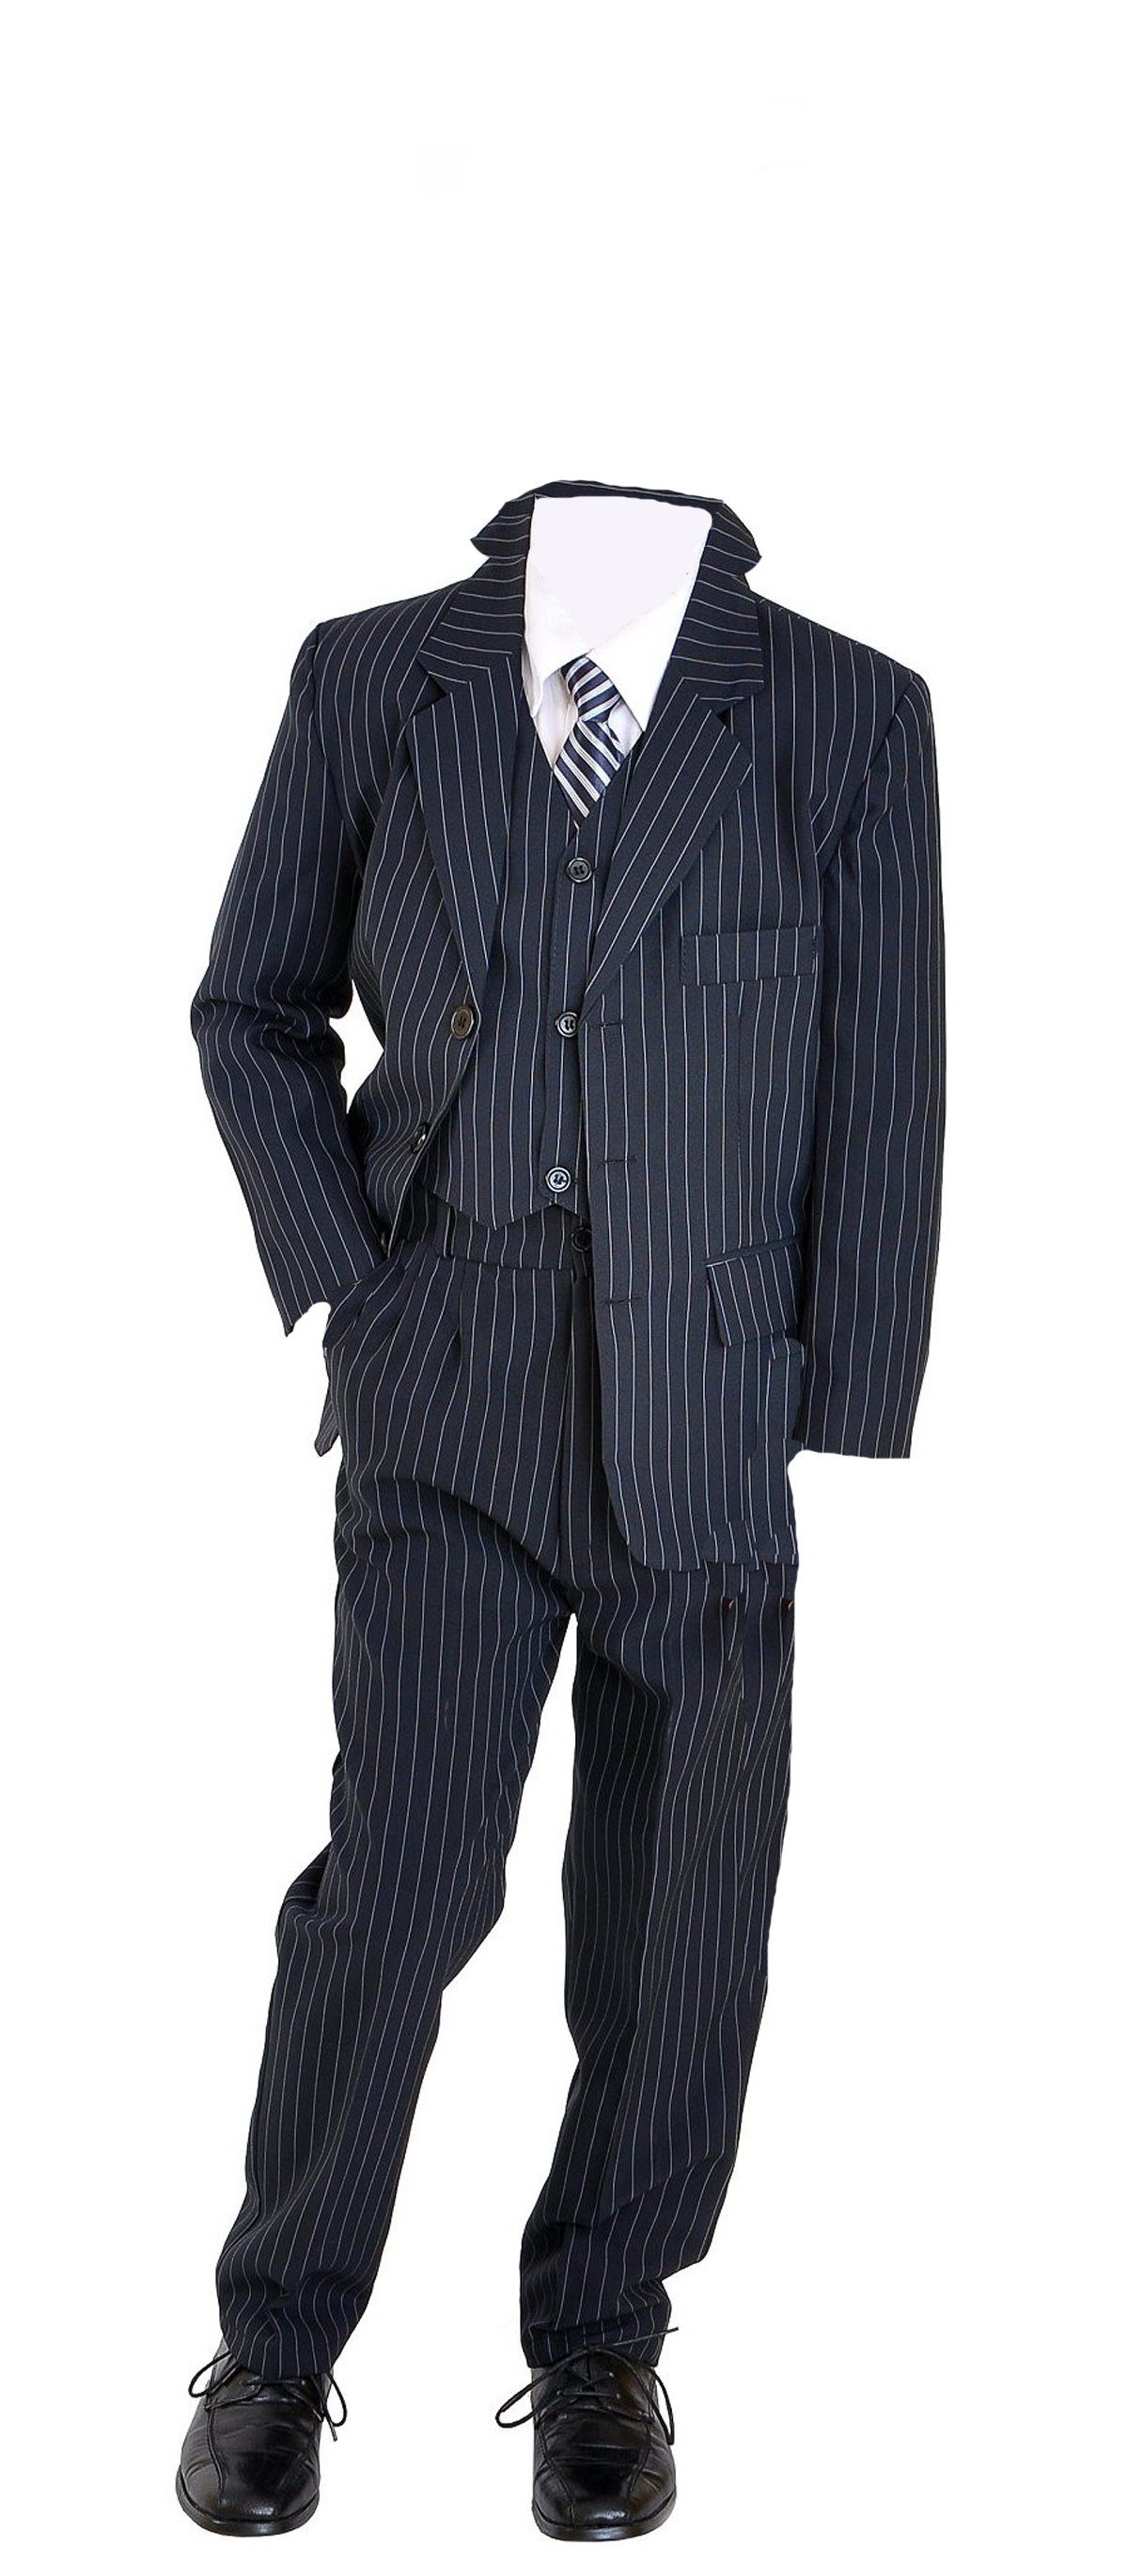 Family Trends blau 5-teiligen Set im im eleganten Anzug Look